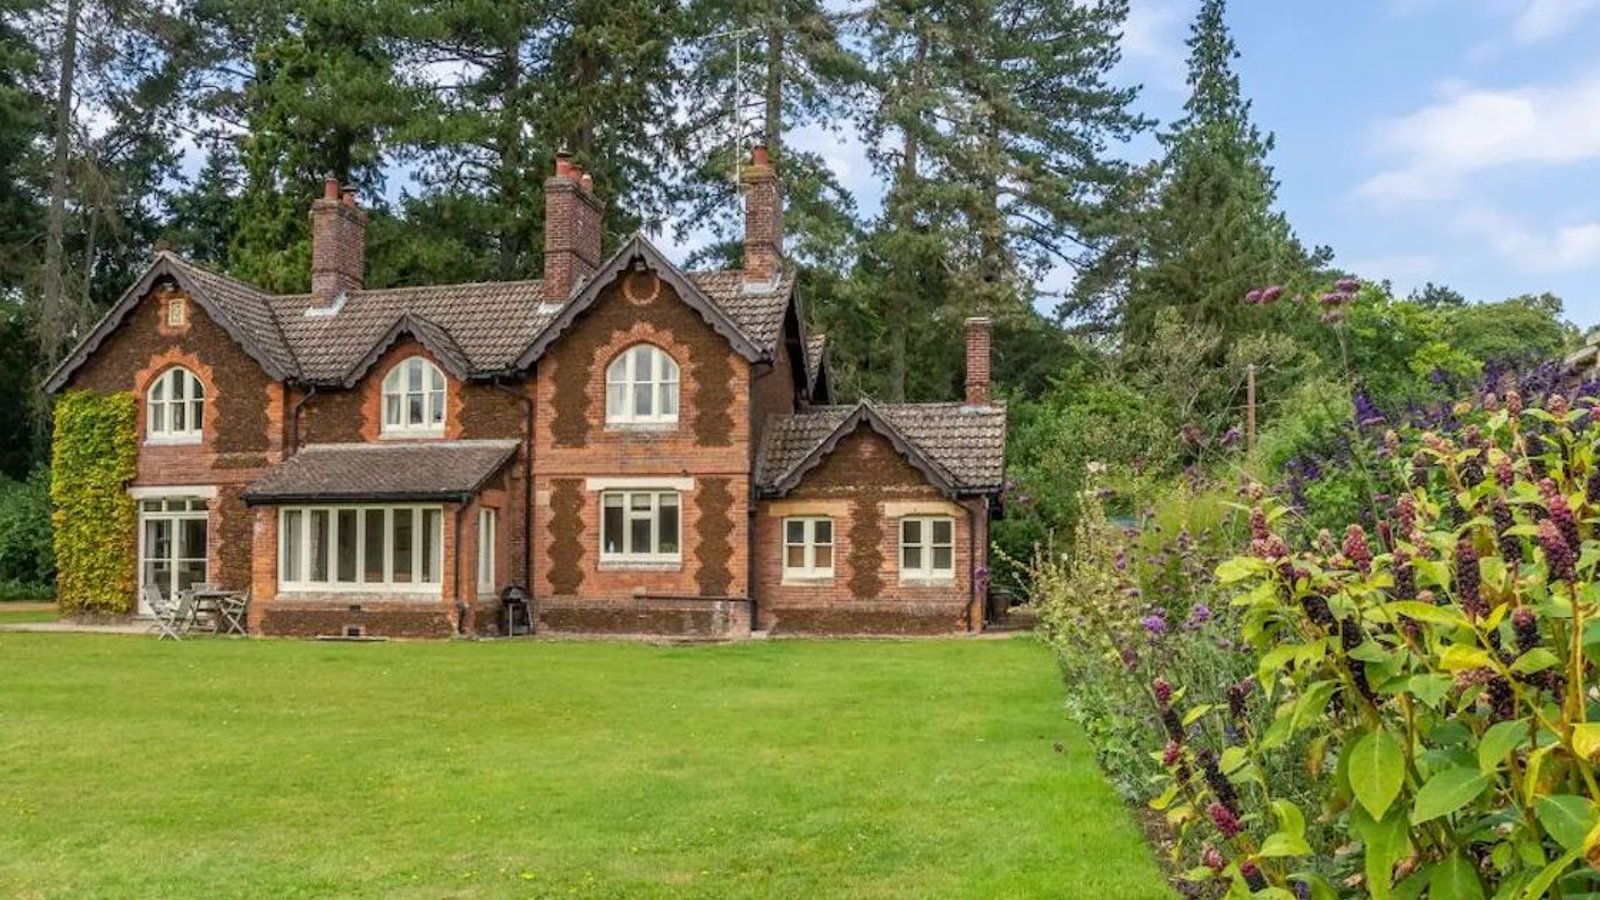 Une magnifique maison ayant appartenu à Elizabeth II est disponible sur Airbnb